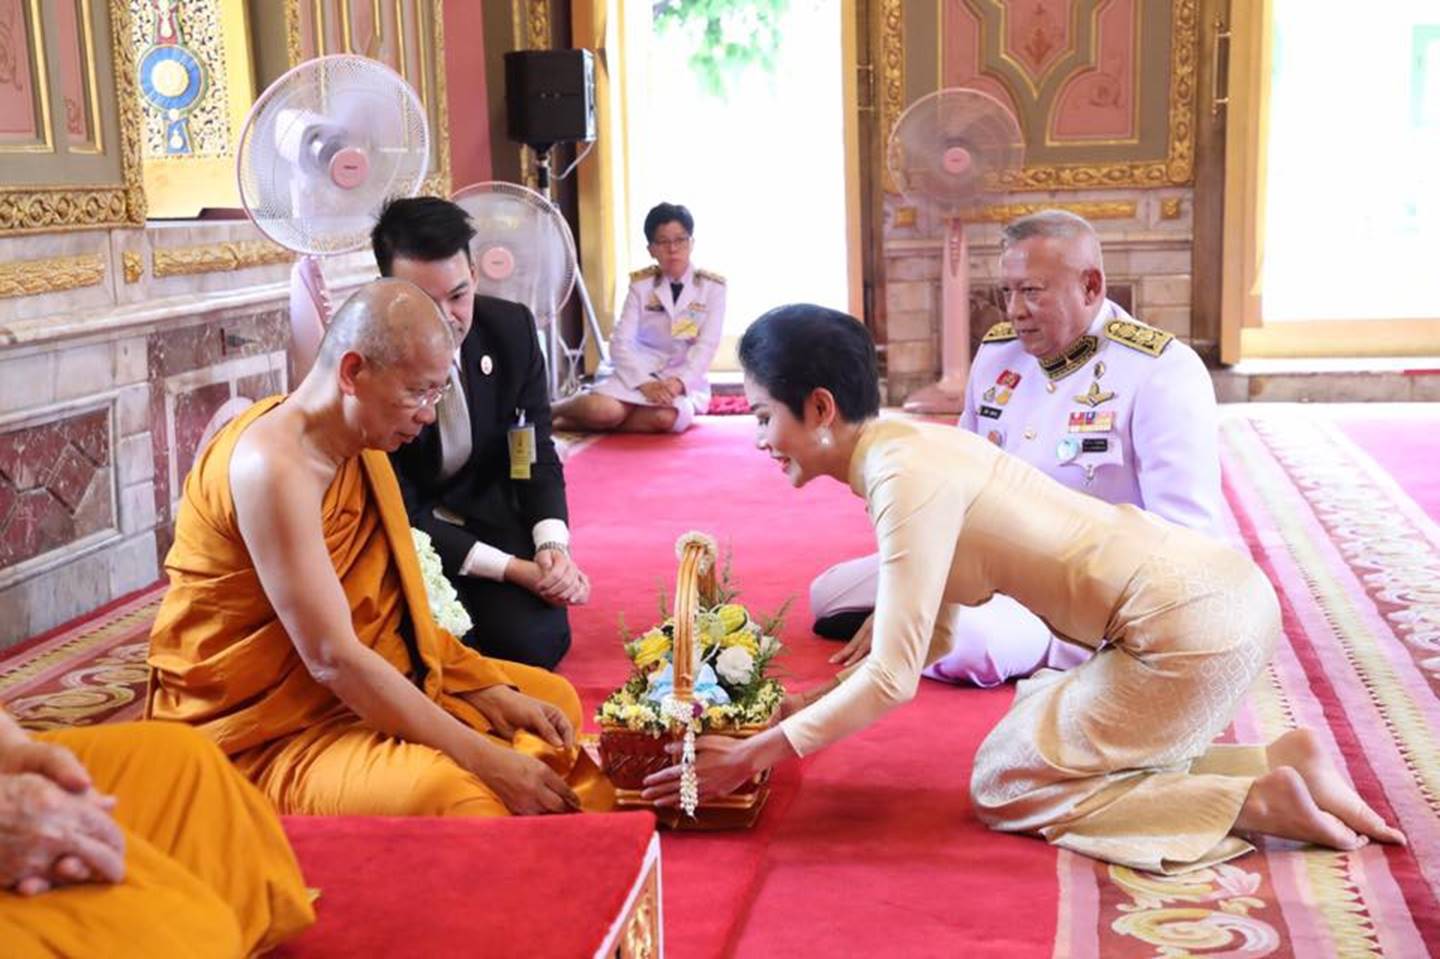 Hoàng quý phi Thái Lan thực hiện nhiệm vụ hoàng gia đầu tiên trên cương vị mới với phong thái gây ngỡ ngàng-4